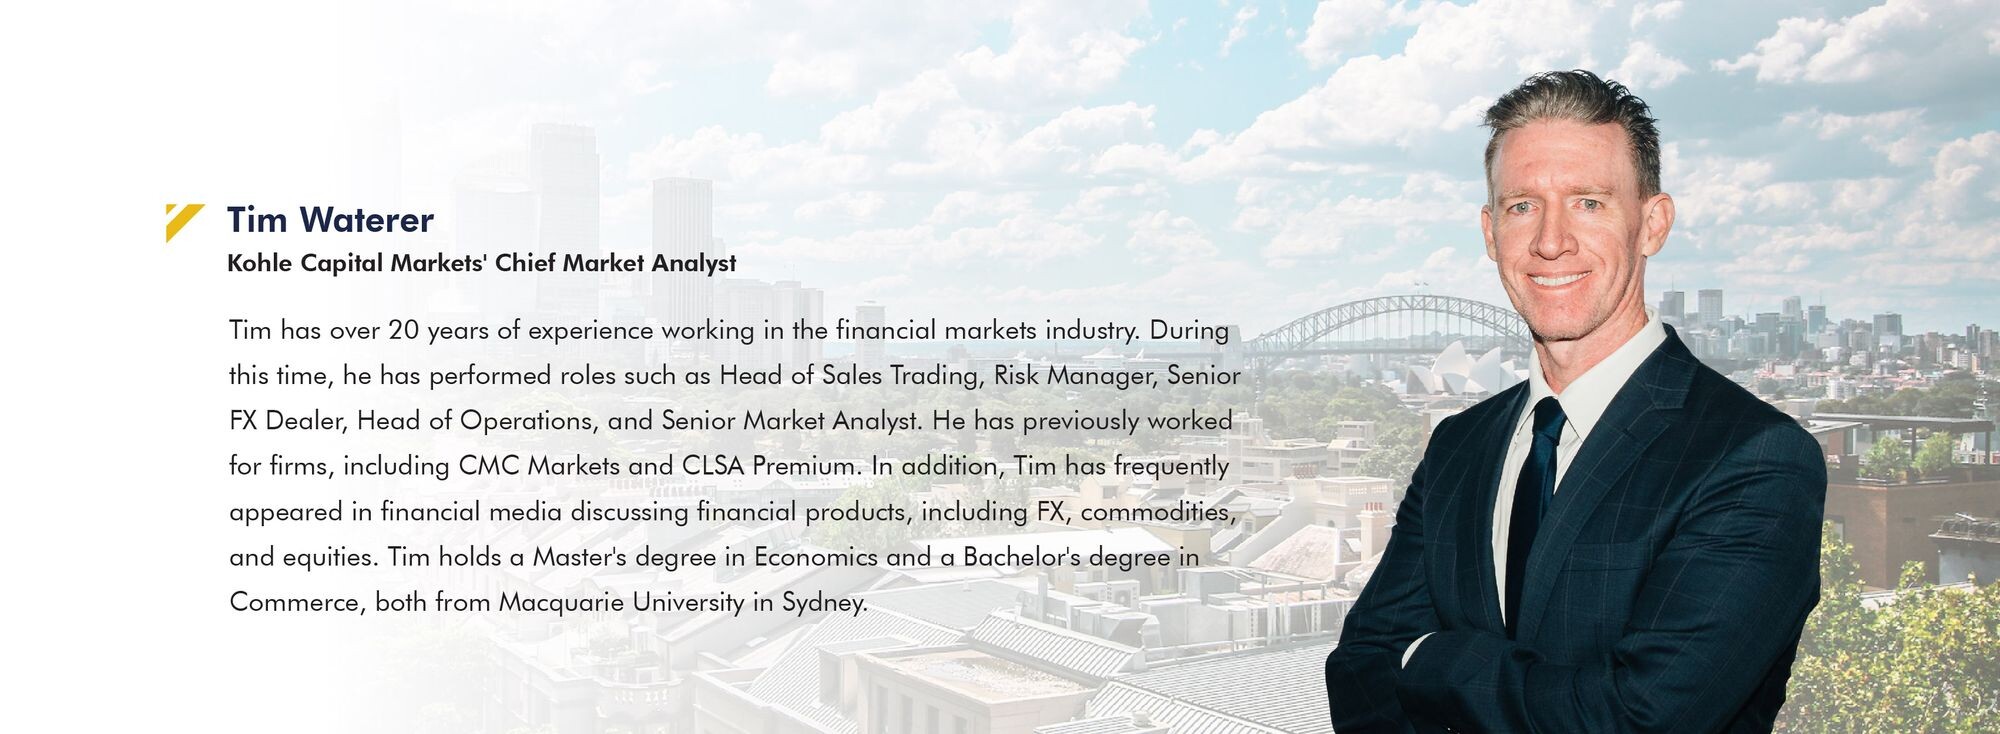 Kohle Capital Markets (KCM) ภาคภูมิใจที่ได้ผู้เชี่ยวชาญมากประสบการณ์ เข้าร่วมทีมงานออสเตรเลีย